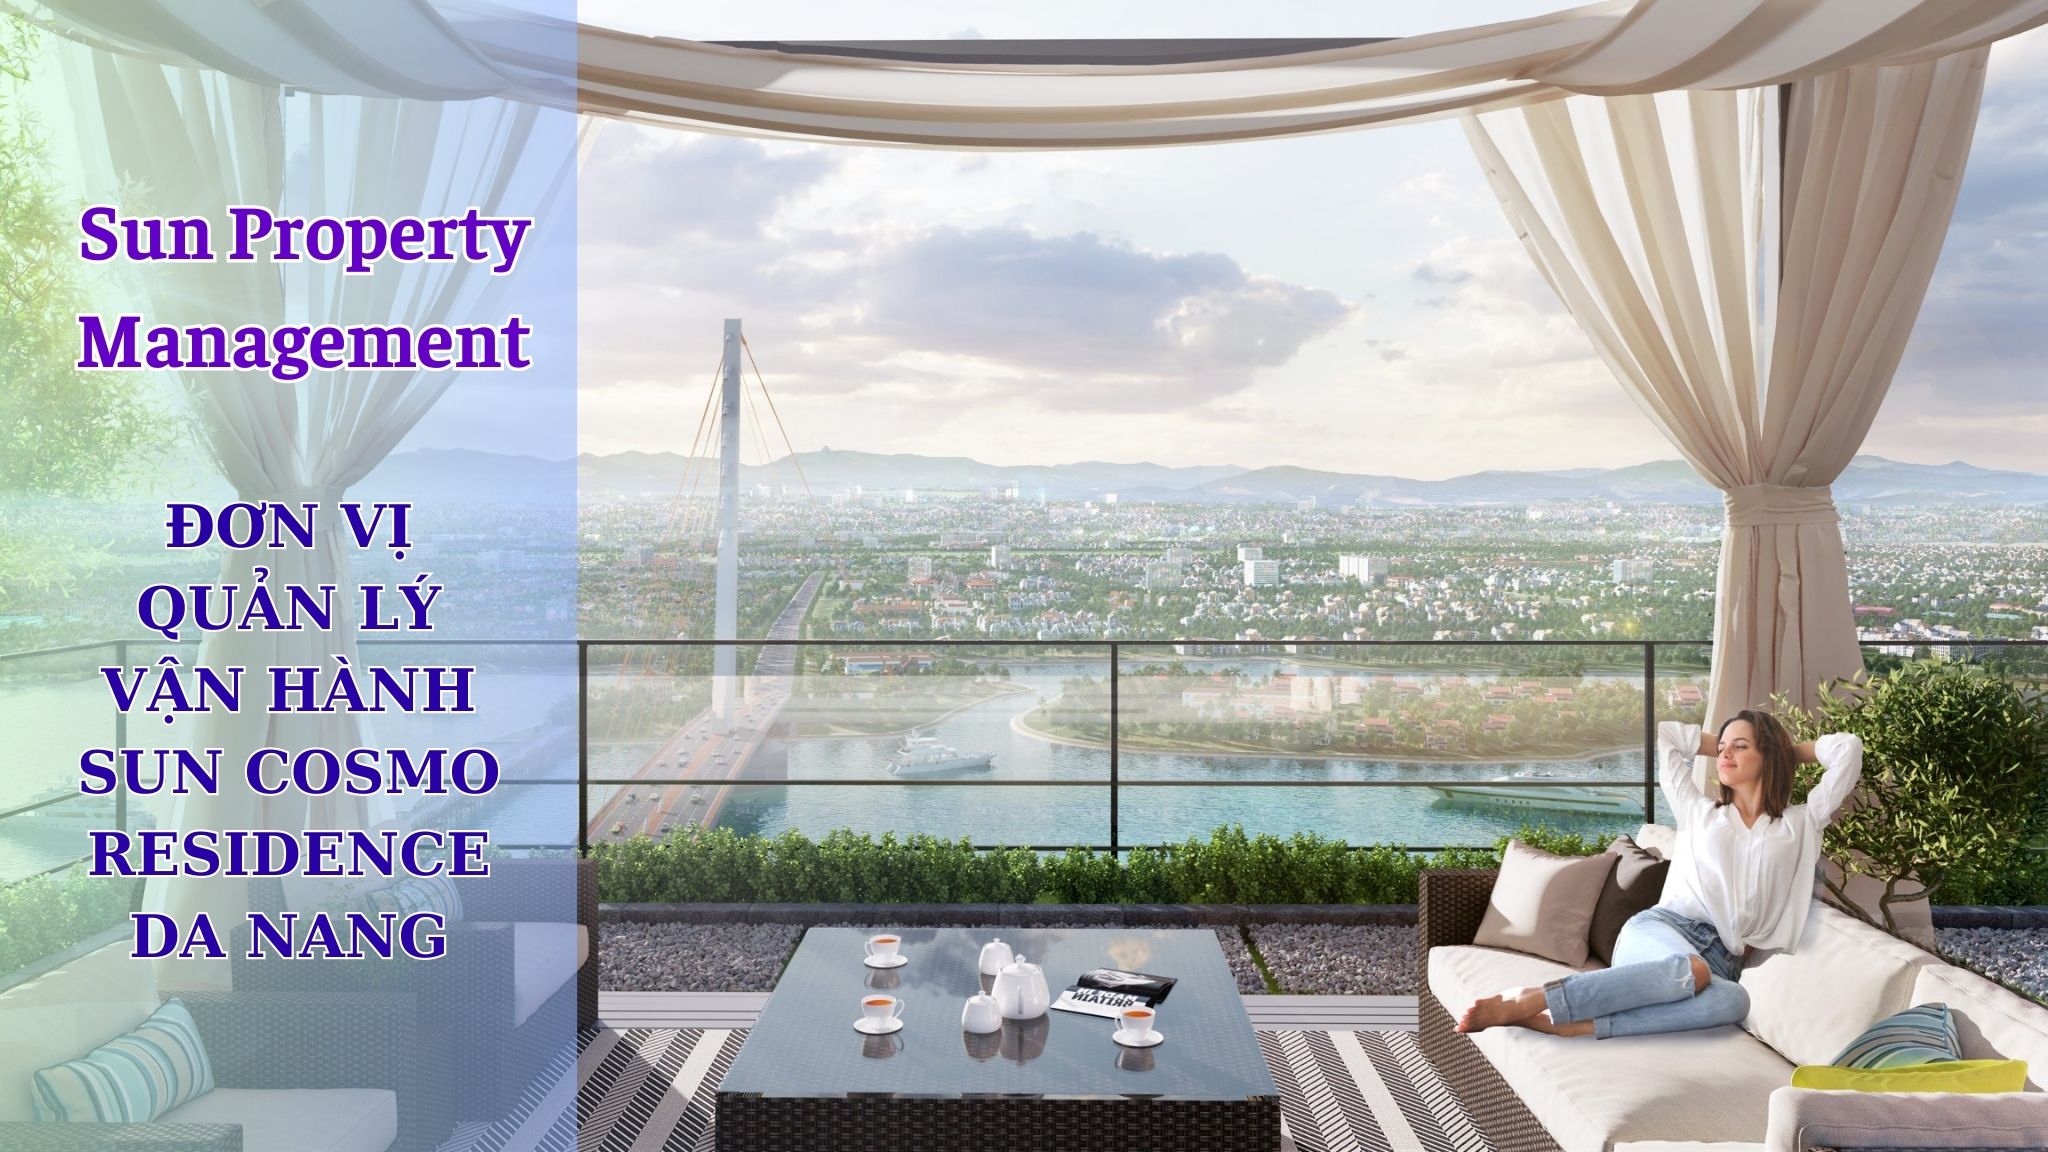 Sun Property Management – Đơn vị quản lý vận hành dự án Sun Cosmo Residence Da Nang